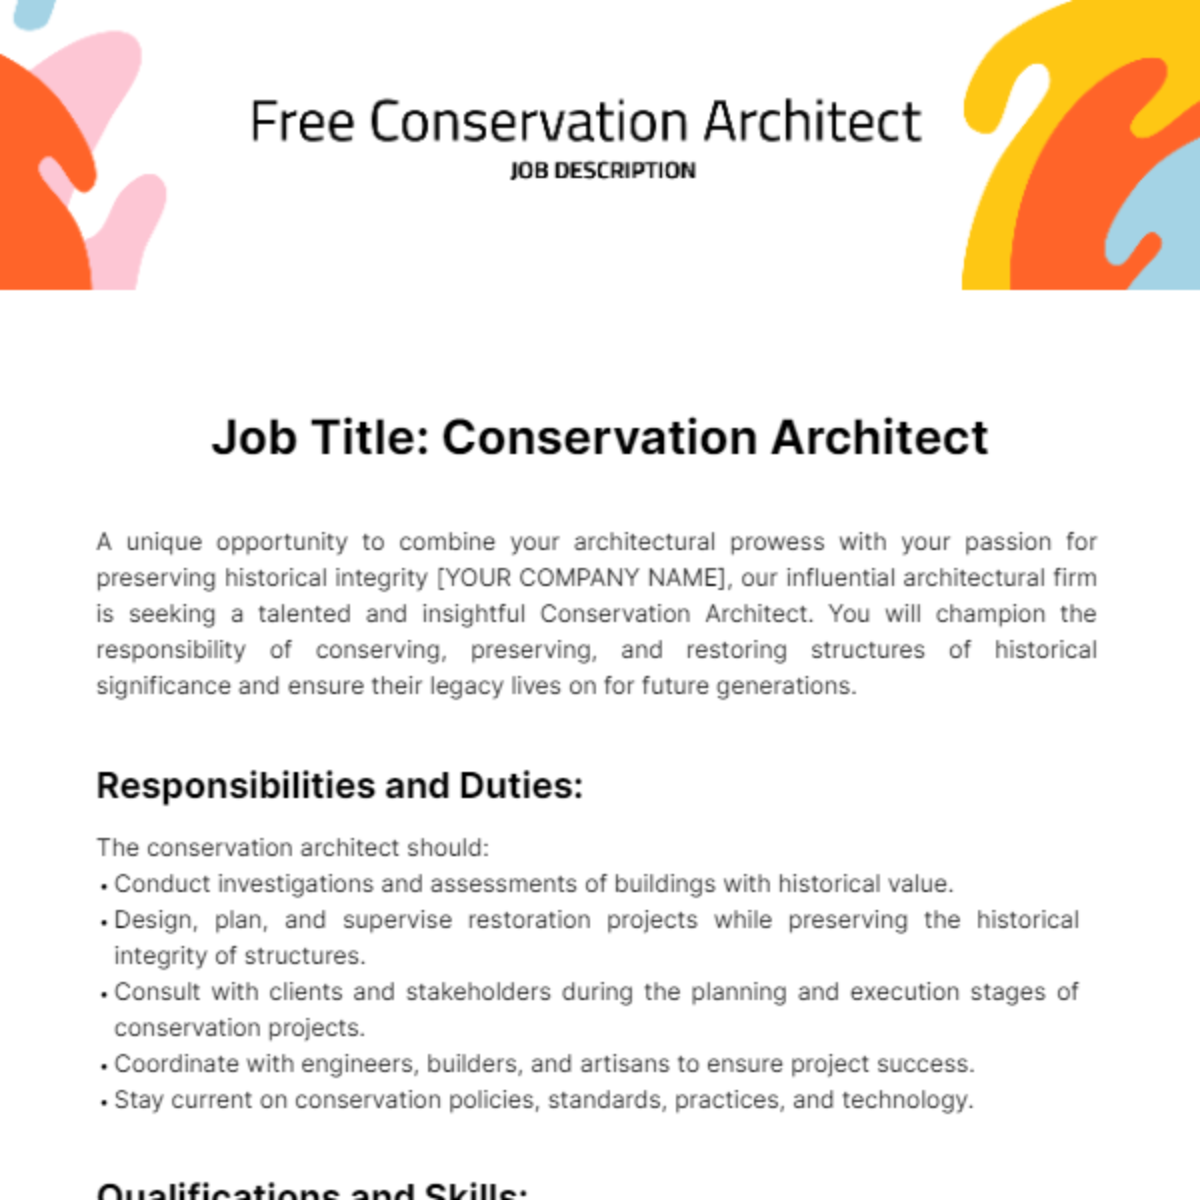 Free Conservation Architect Job Description Template